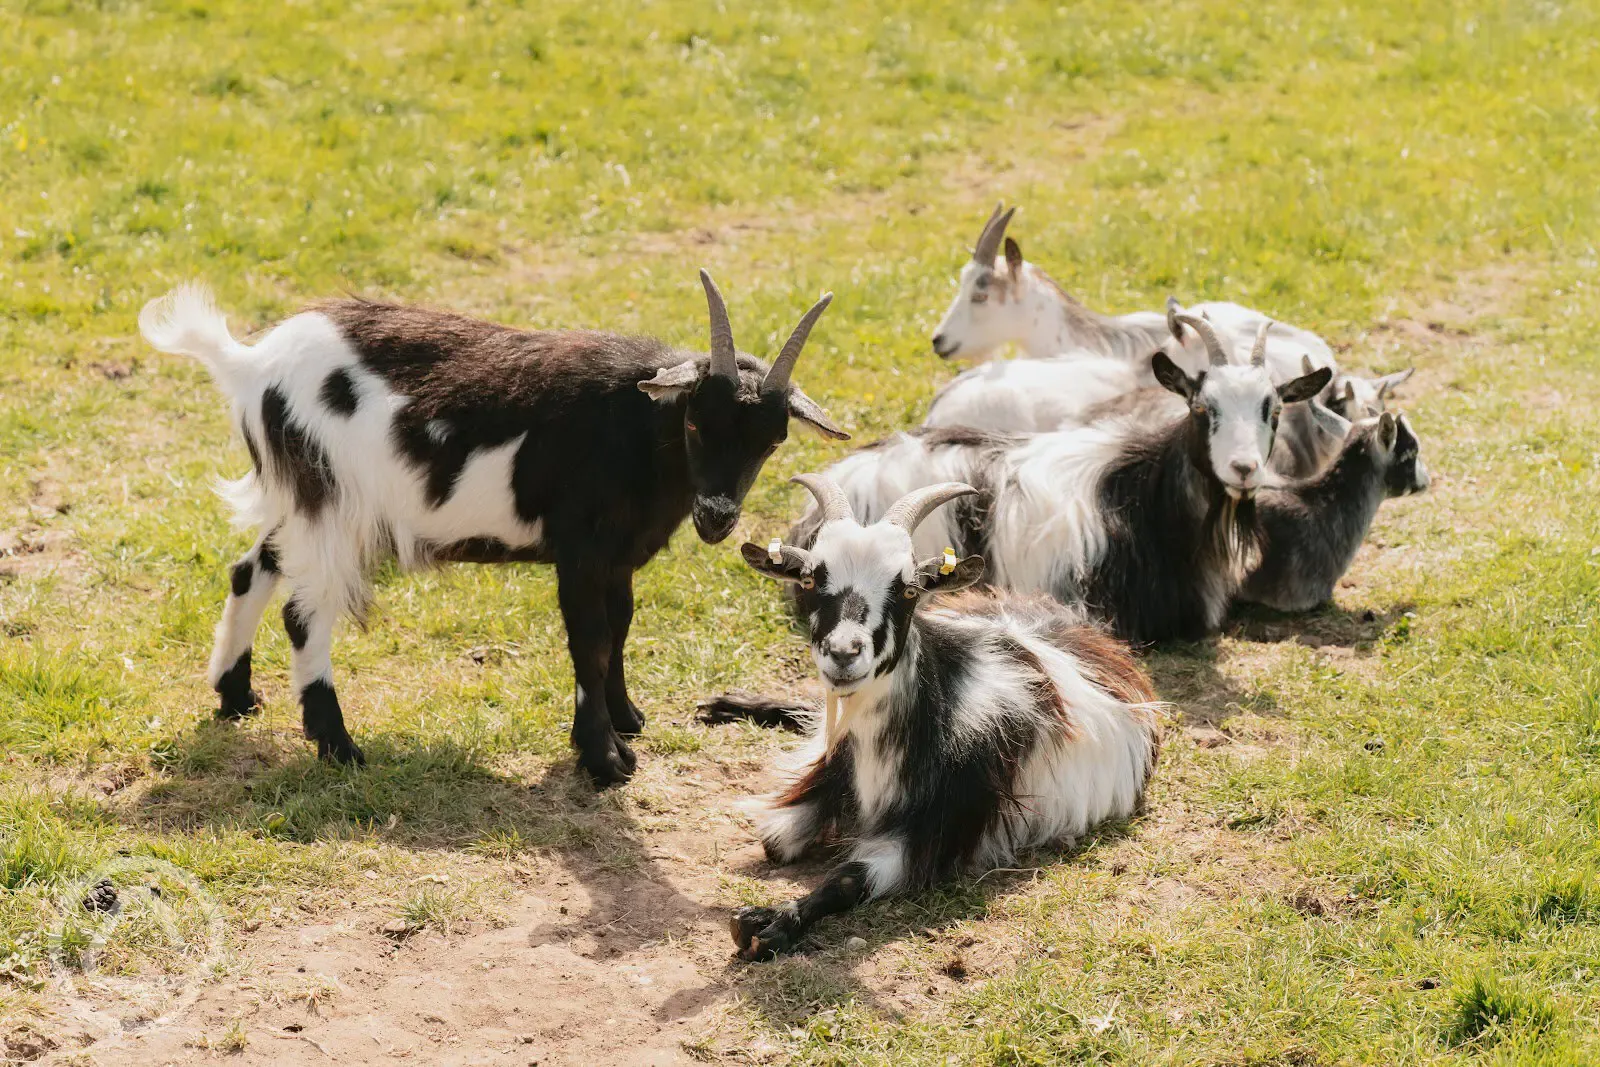 Goats on the farm